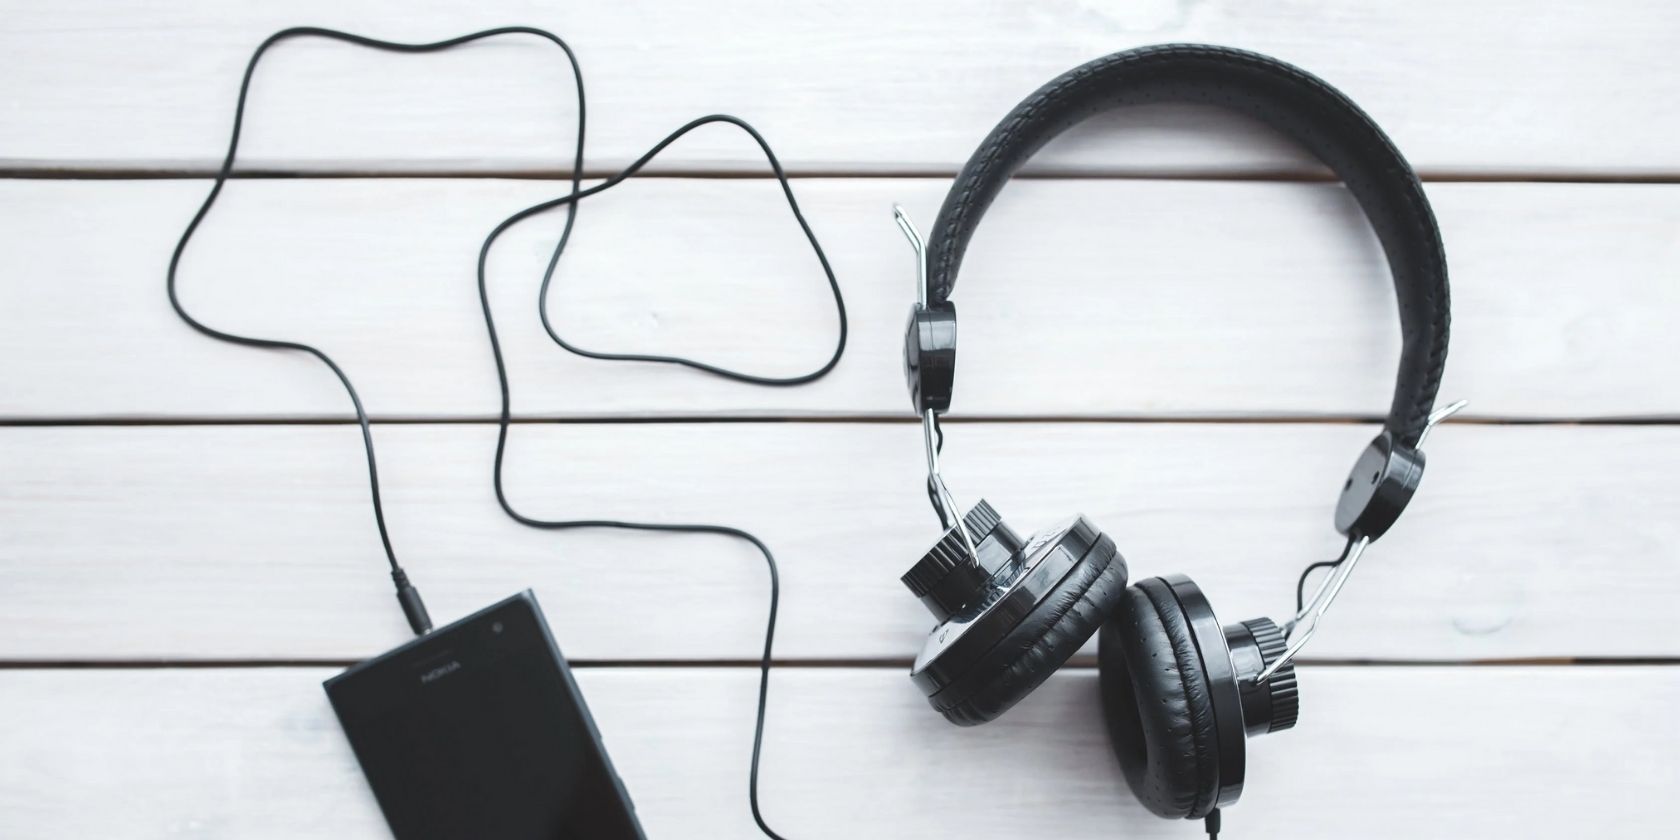 How to Decide Between Wired vs. Wireless Headphones?